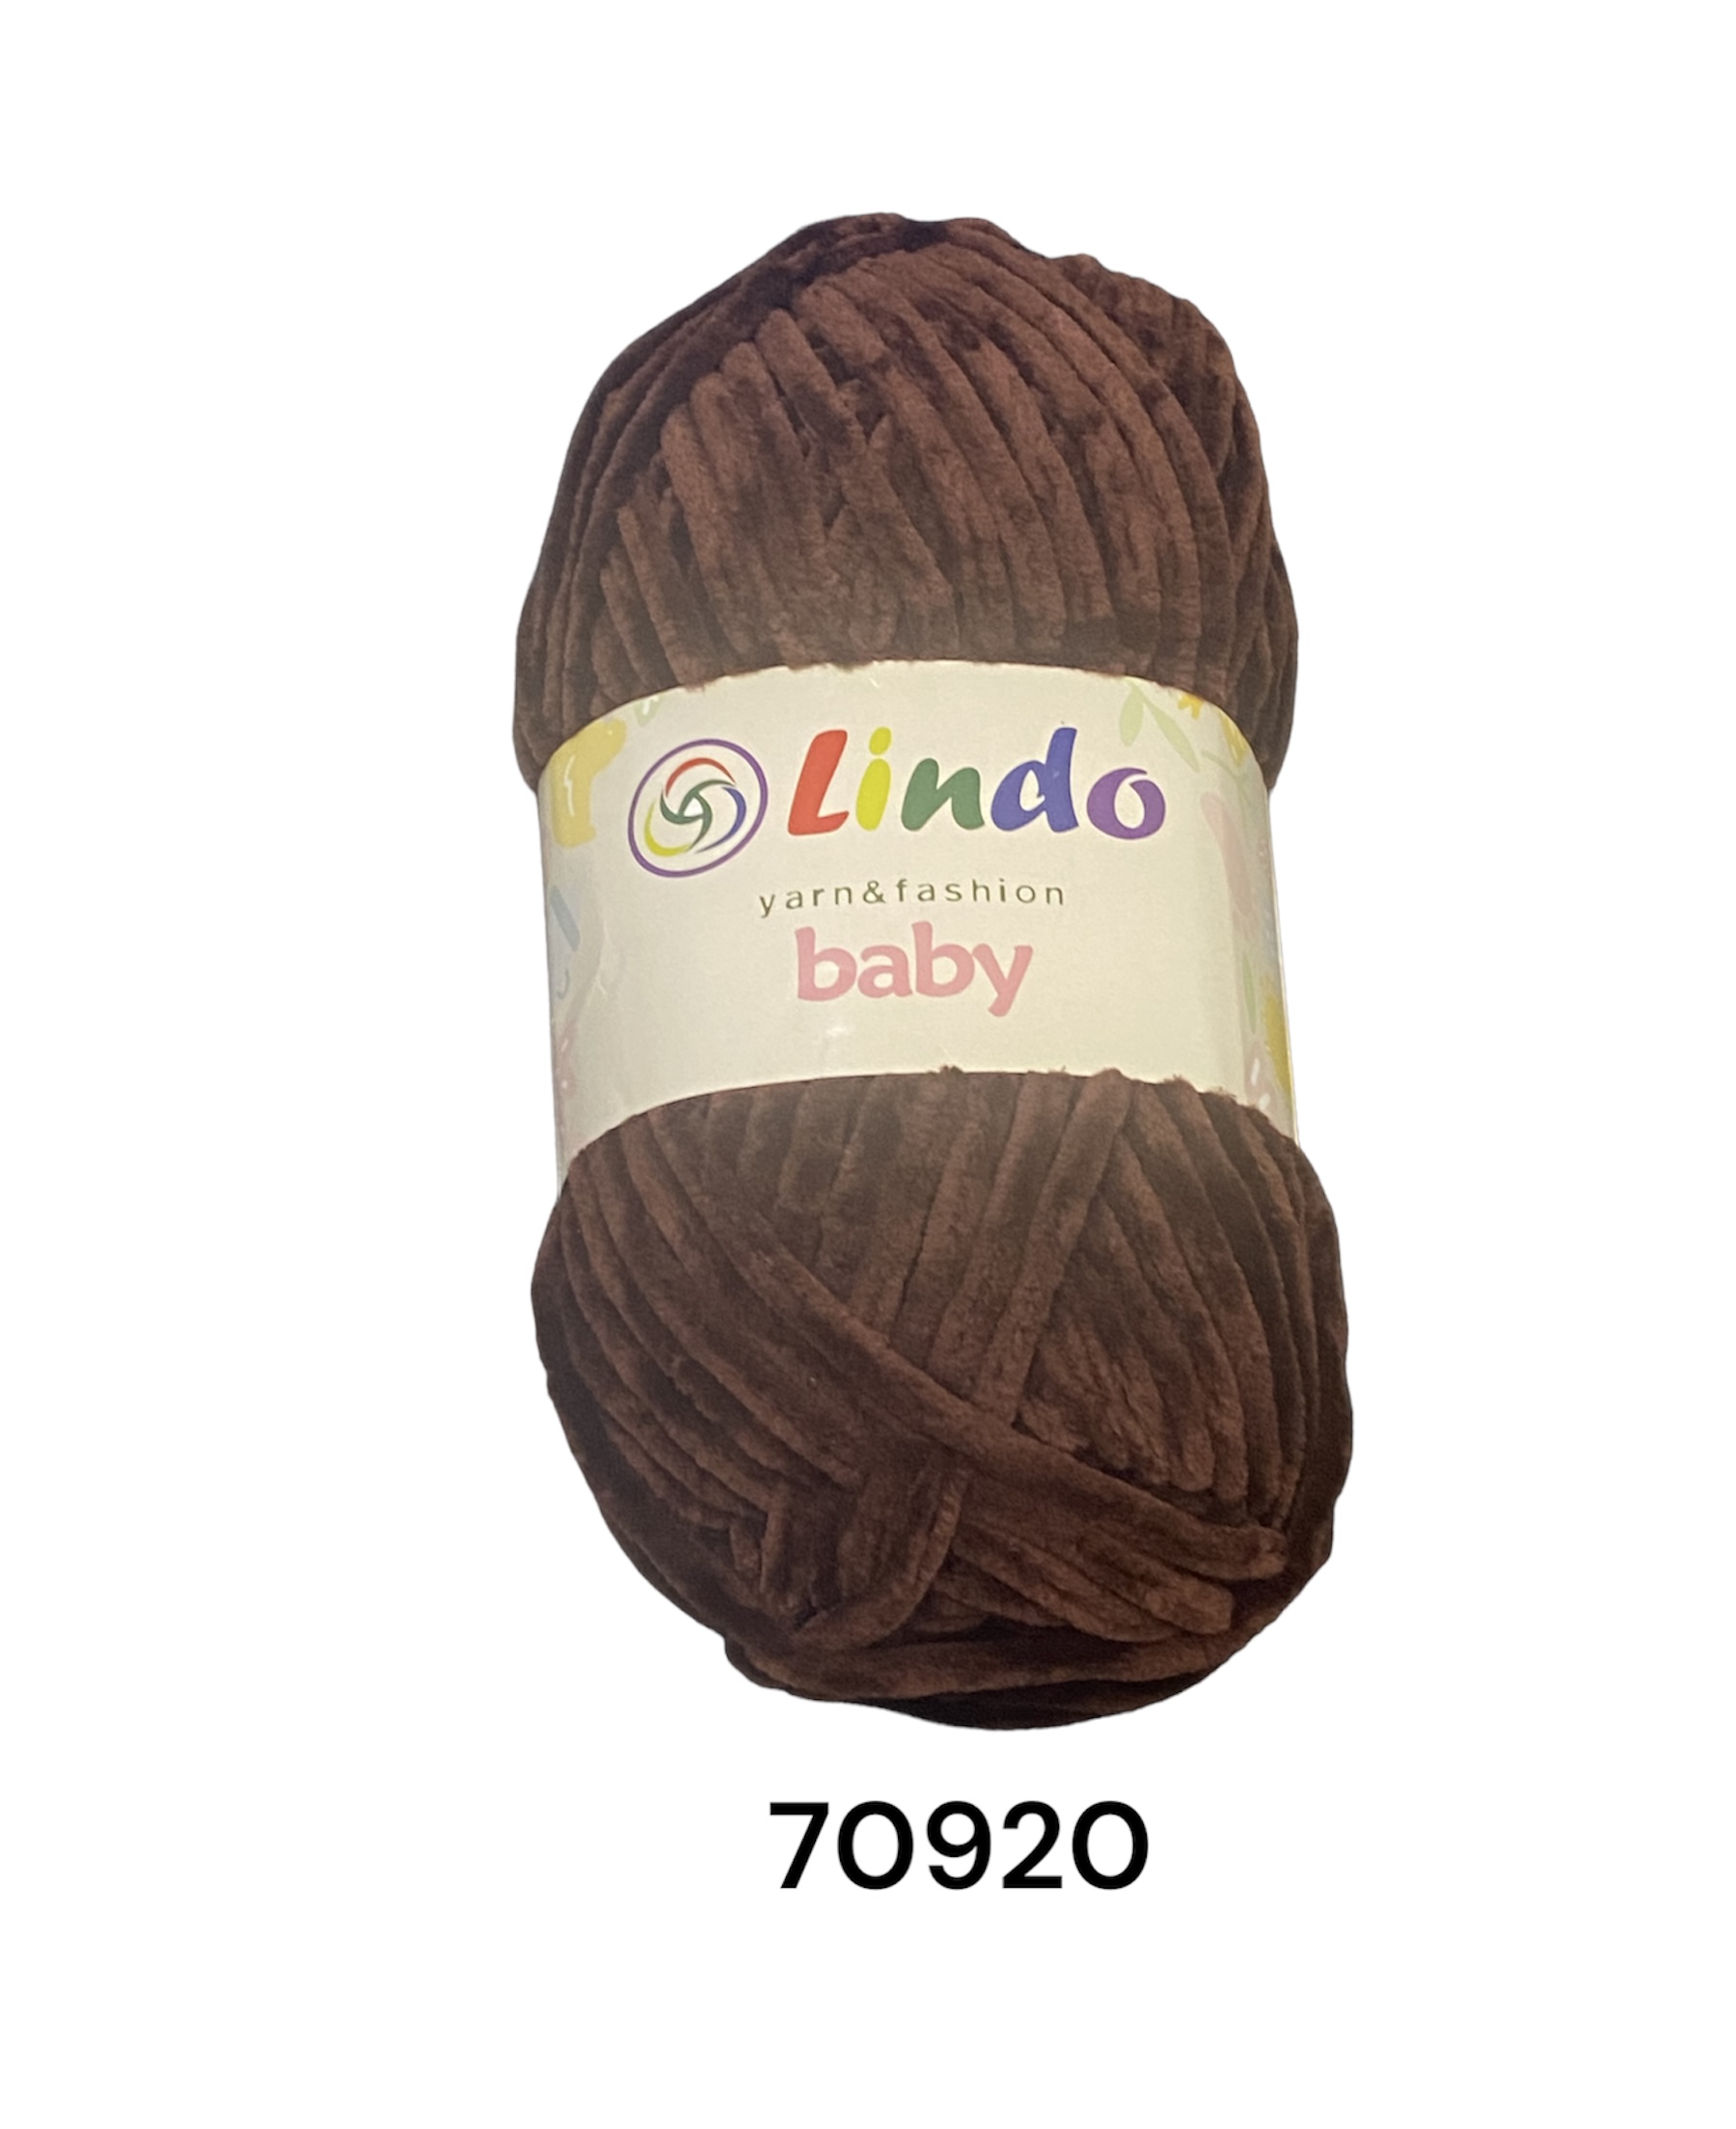 PUKKA Lindo Baby, 100g,70920